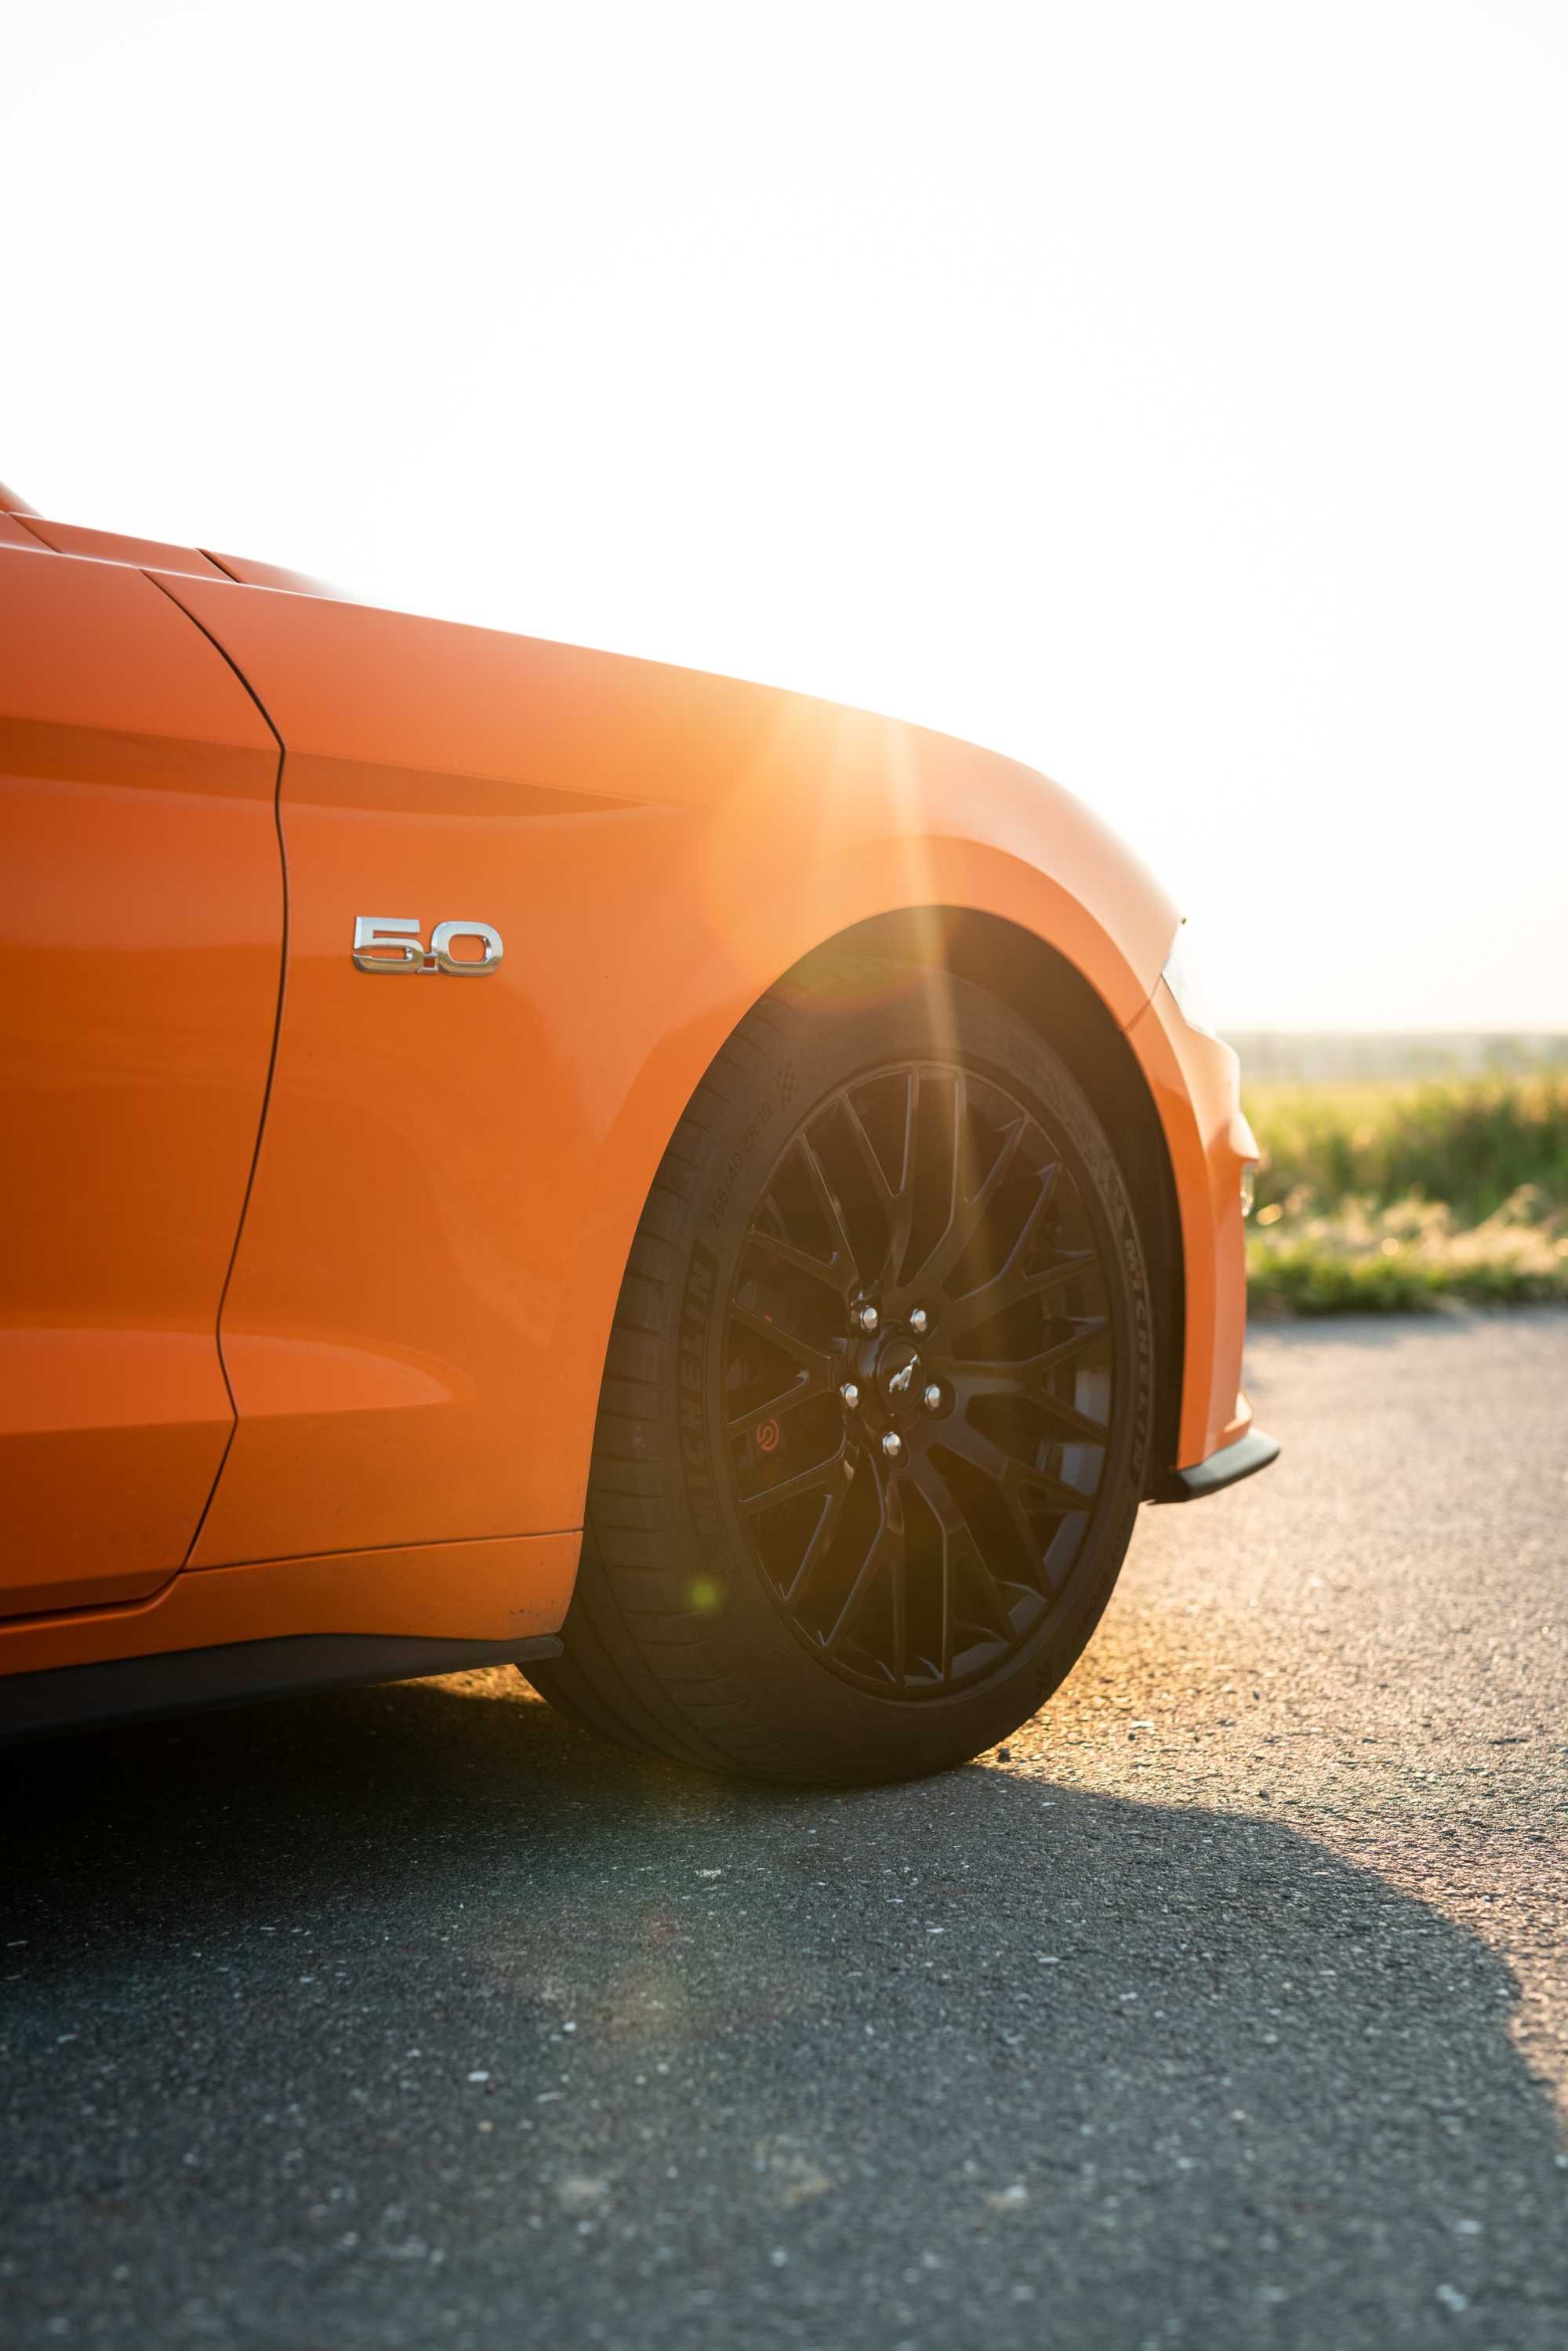 WYNAJEM Ford Mustang GT 5.0 Wypożyczalnia aut sportowych Poznań